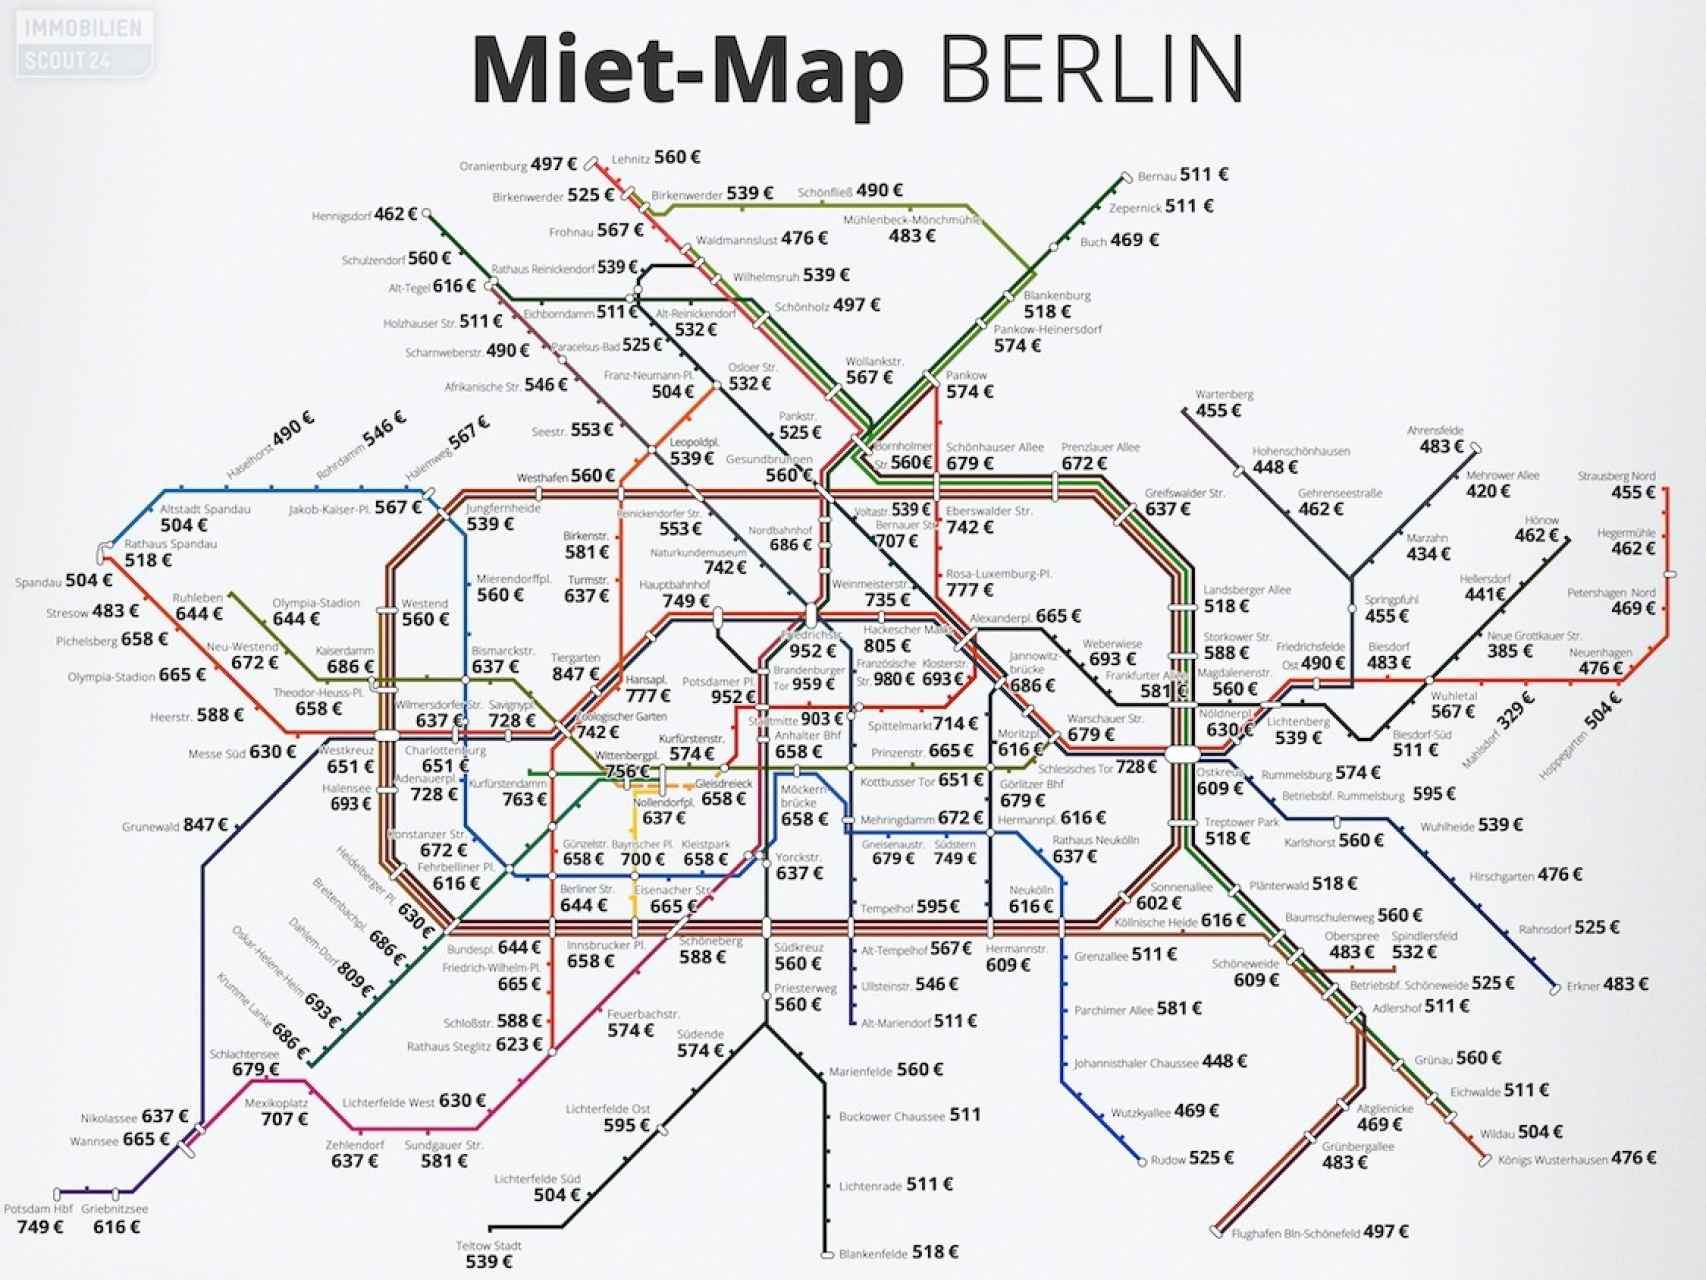 Mapa del coste del alquiler en Berlín en 2016, para pisos de unos 70 m2.